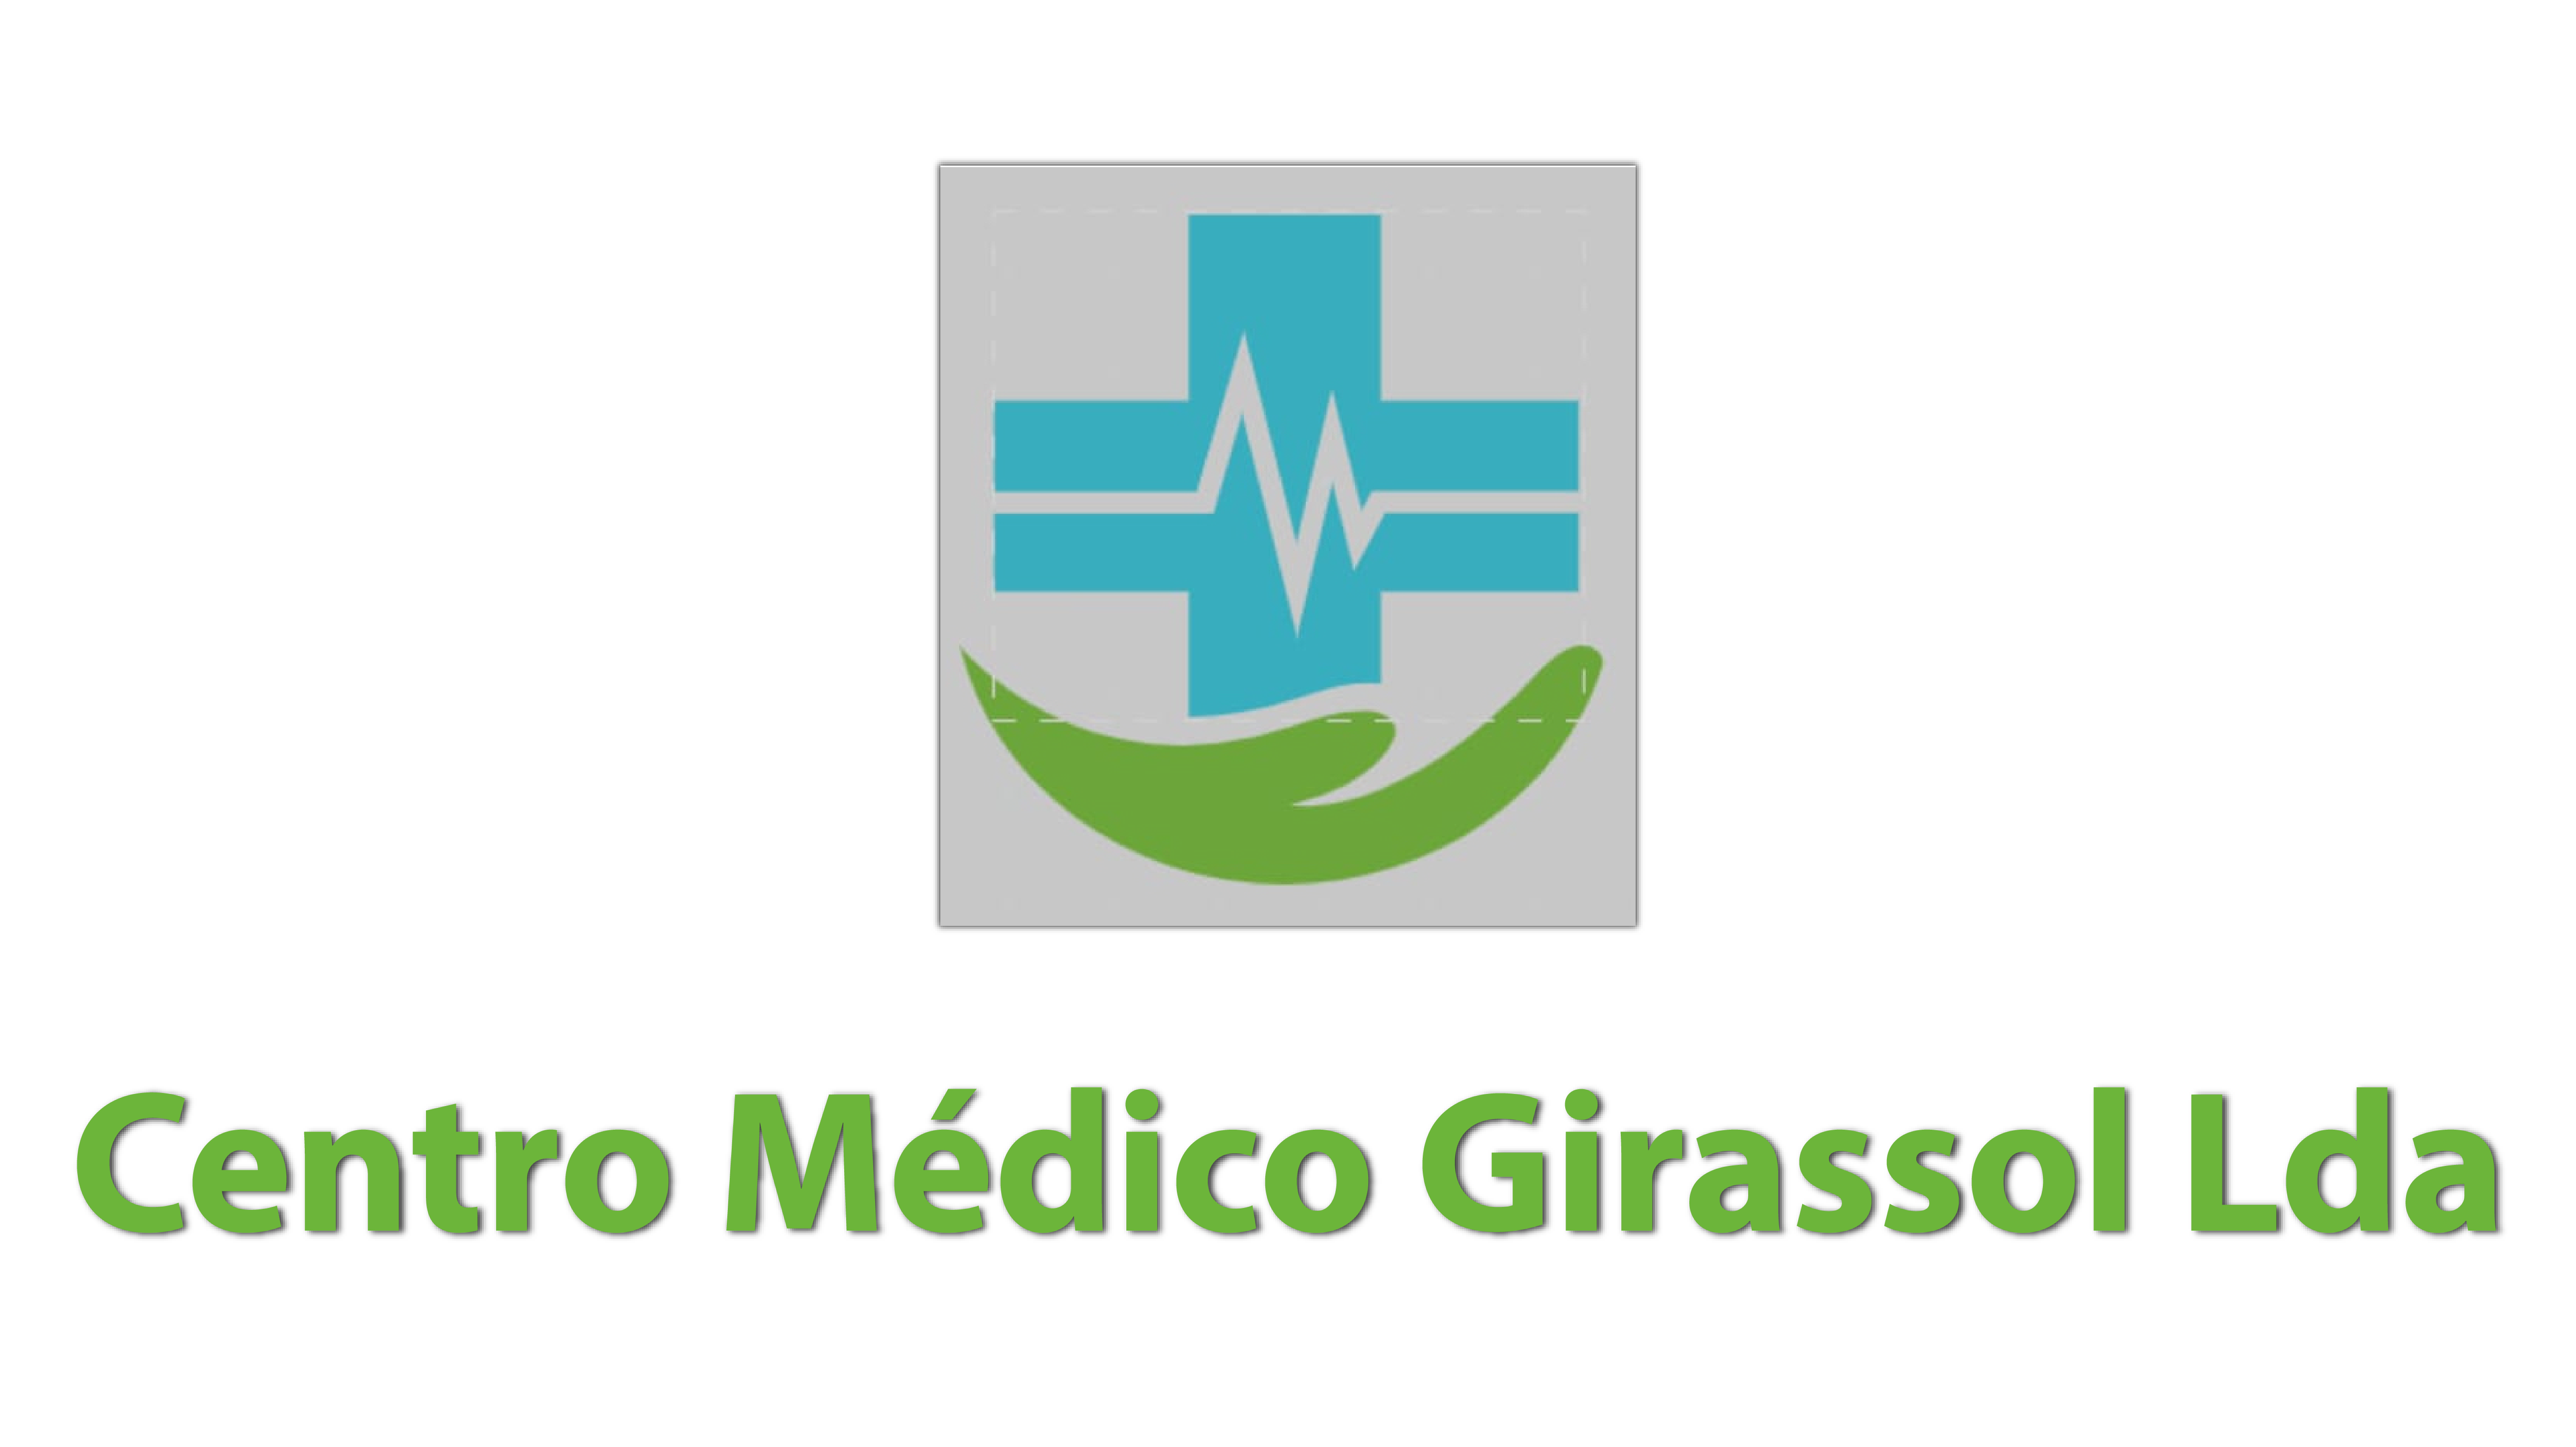 Centro Medico Girassol